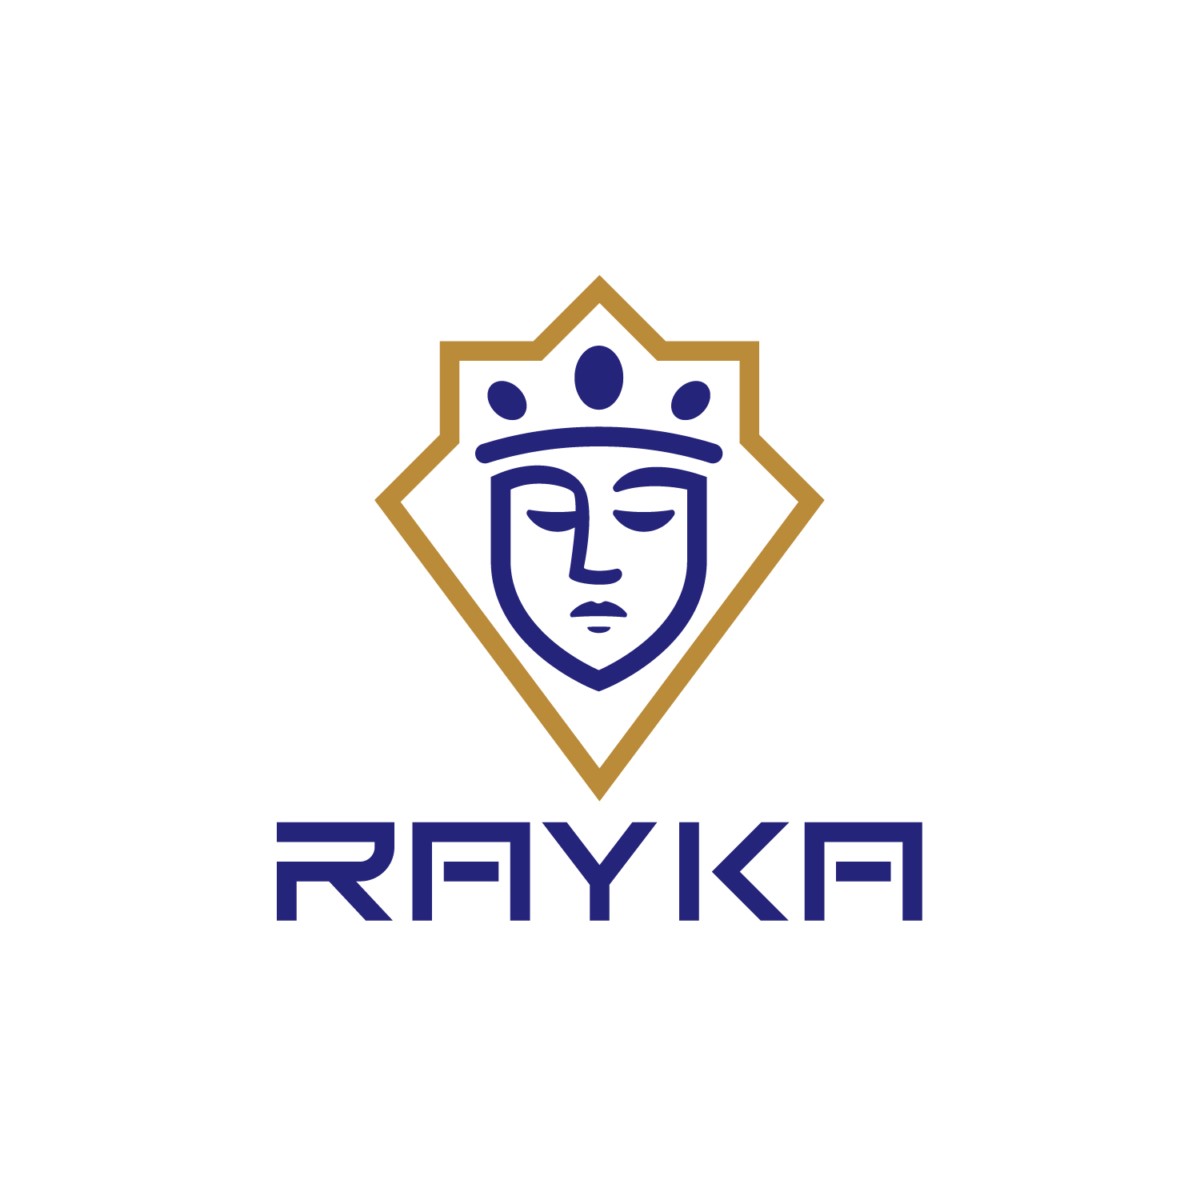 Rayka男装品牌形象设计